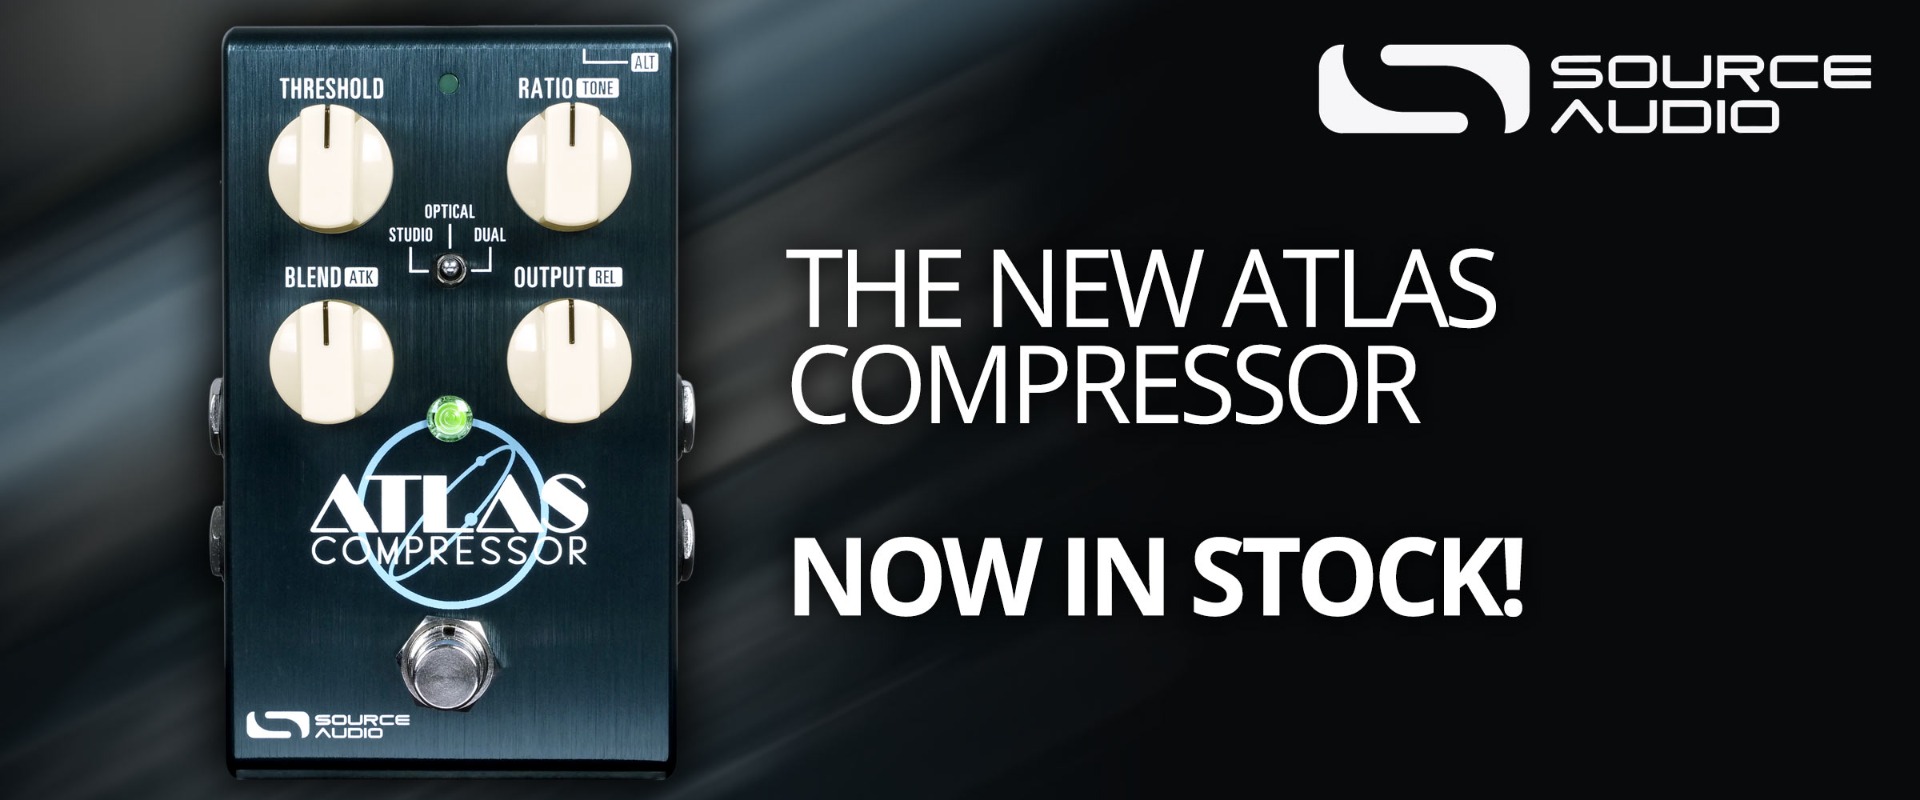 Now in stock. Source Audio Atlas Compressor!